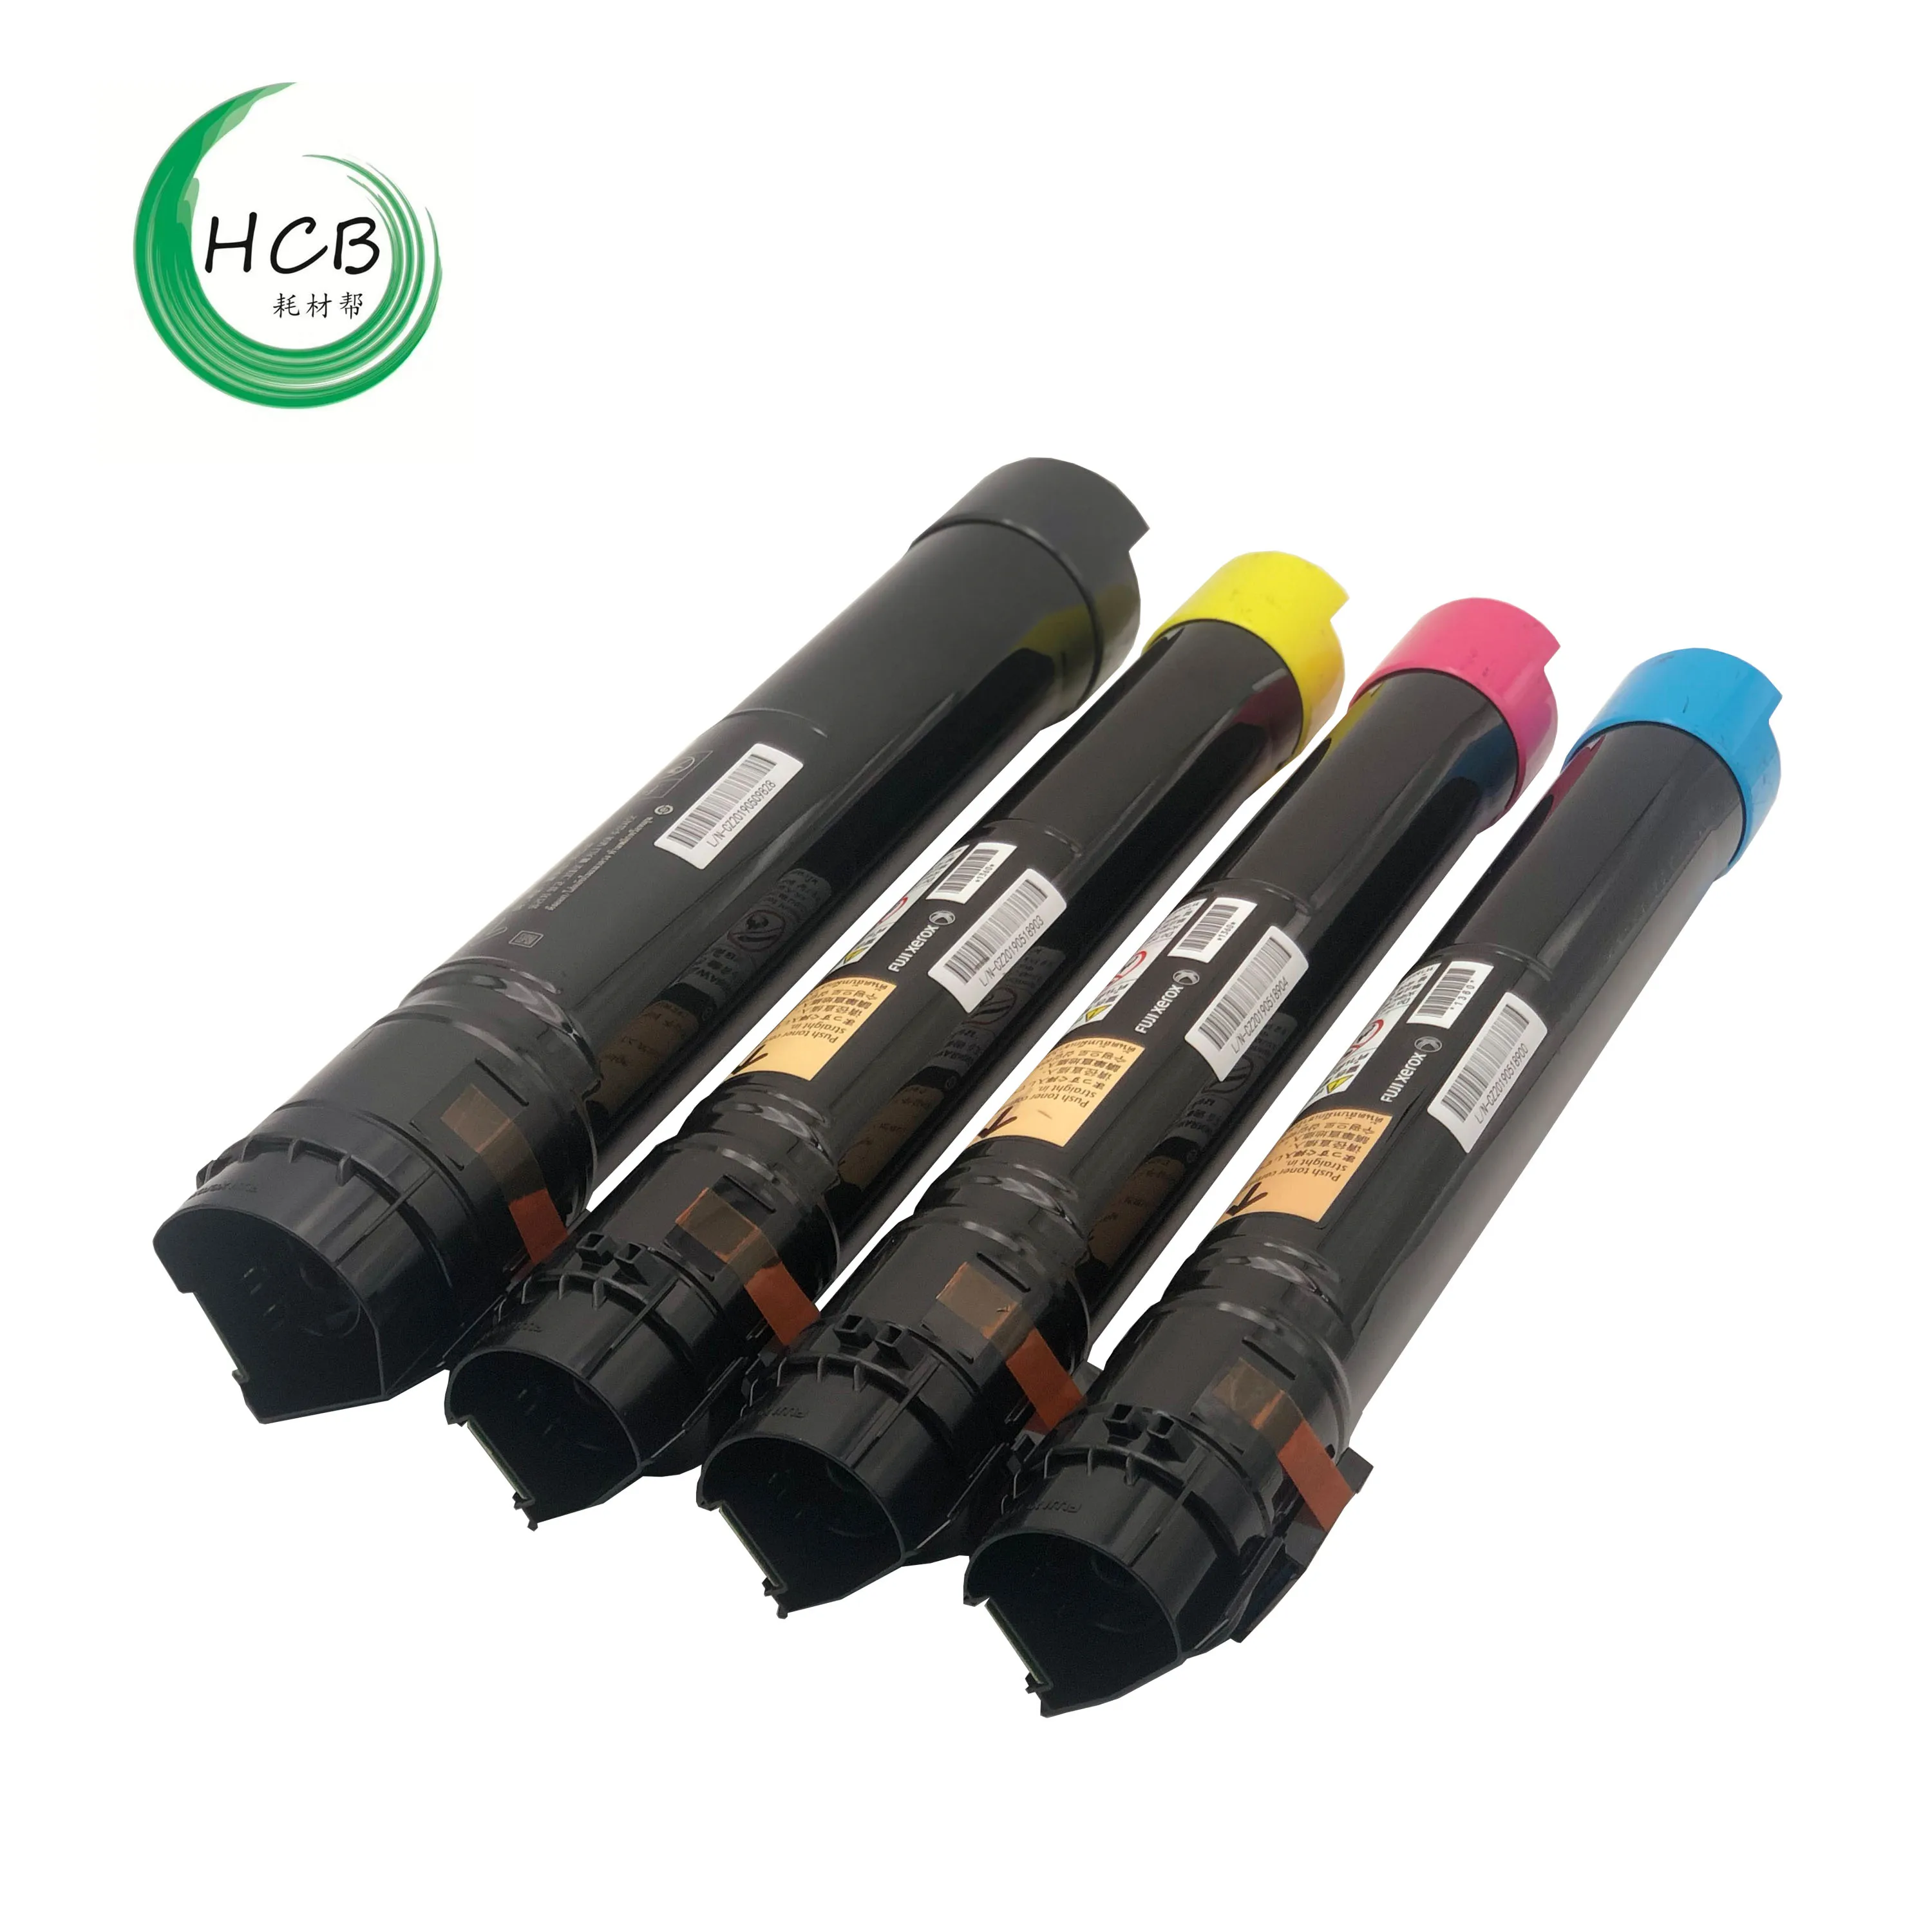 Remanufactured color toner cartridge for C2270 C3370 C3373 C4470 C5570 C2275 C3375 C4475 C5575 Fuji Xerox toner